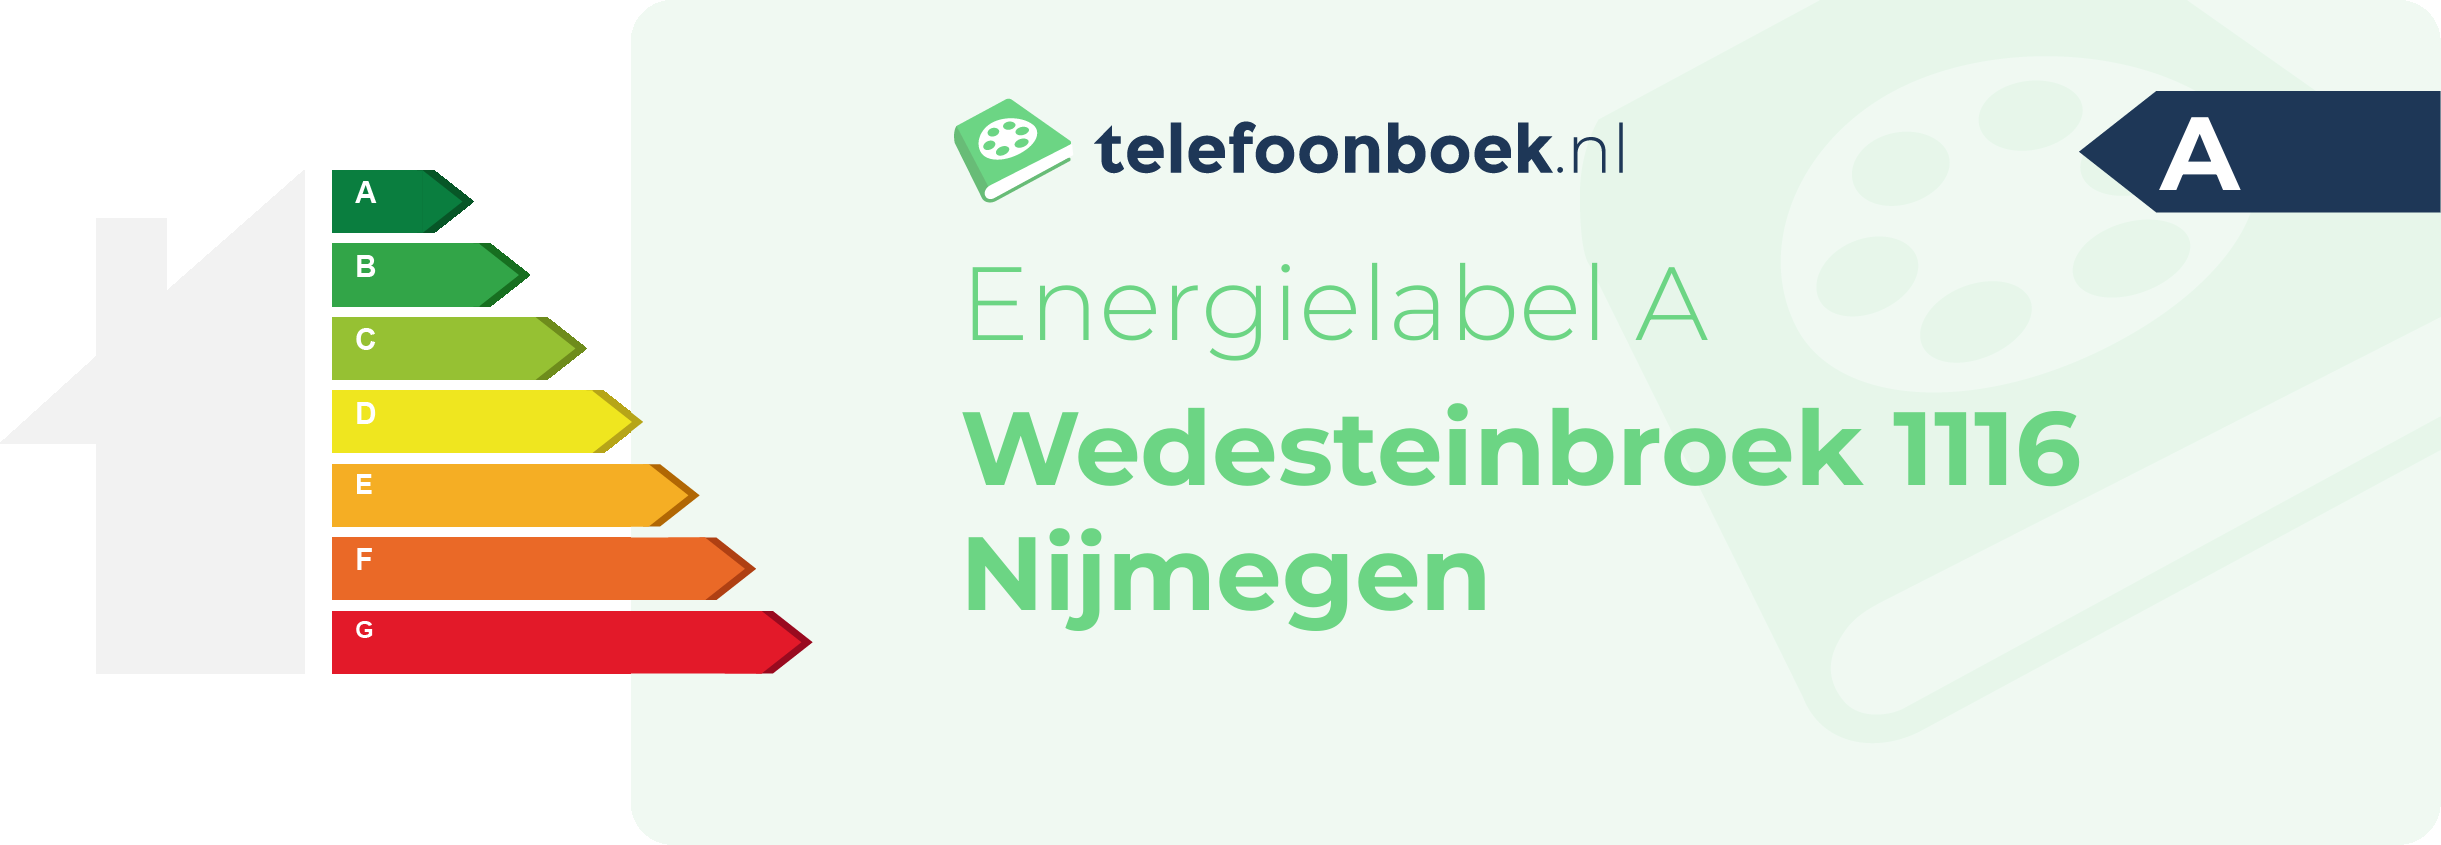 Energielabel Wedesteinbroek 1116 Nijmegen